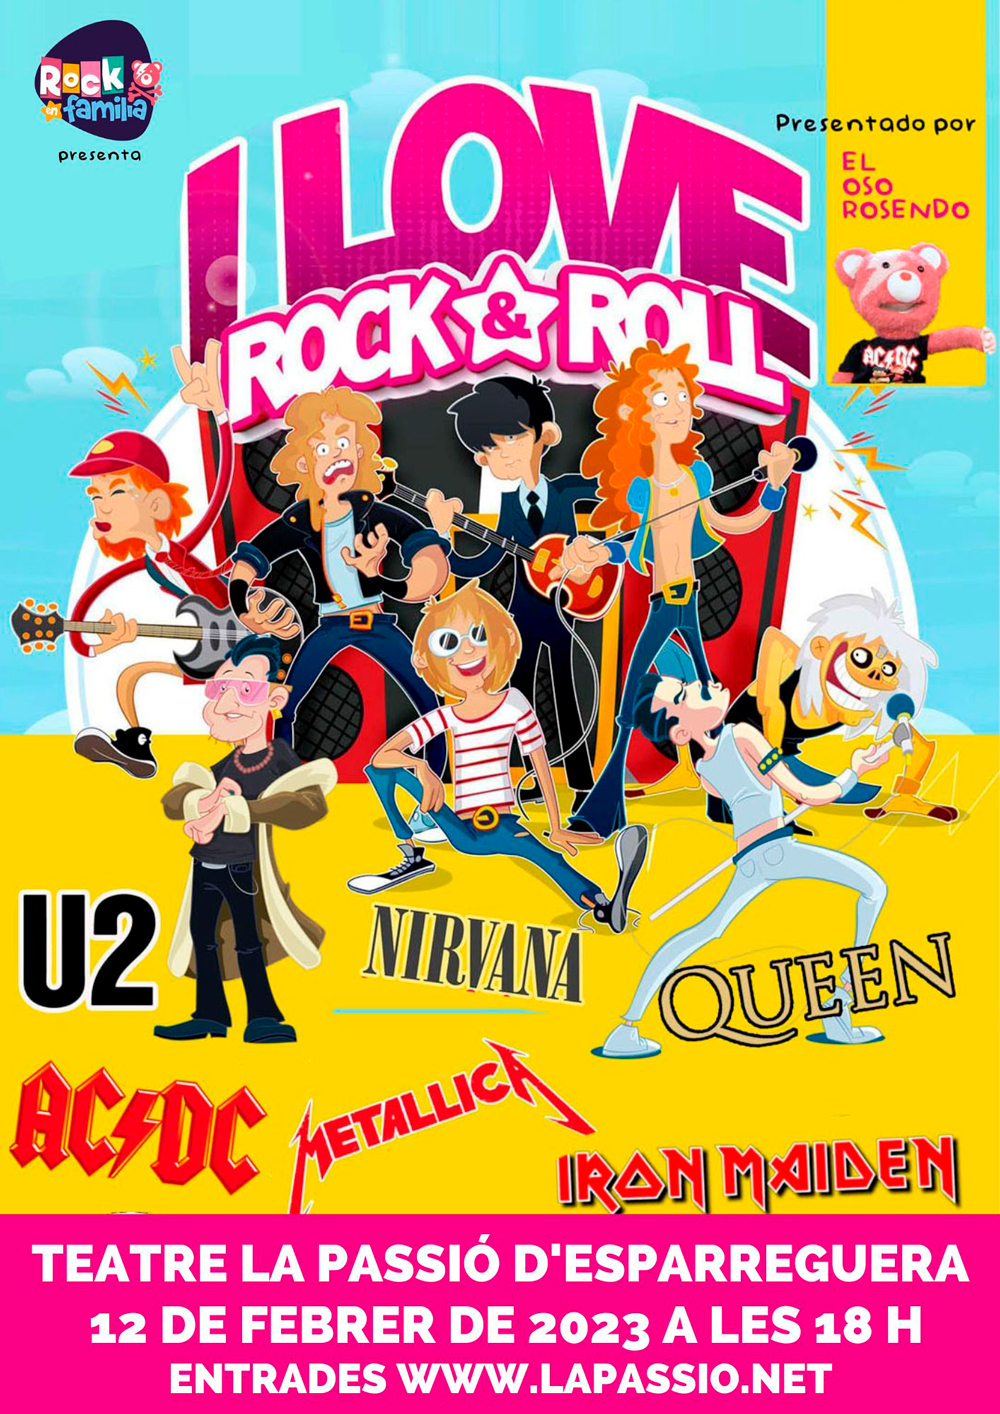 La Bustia concert infantil i love rock and roll